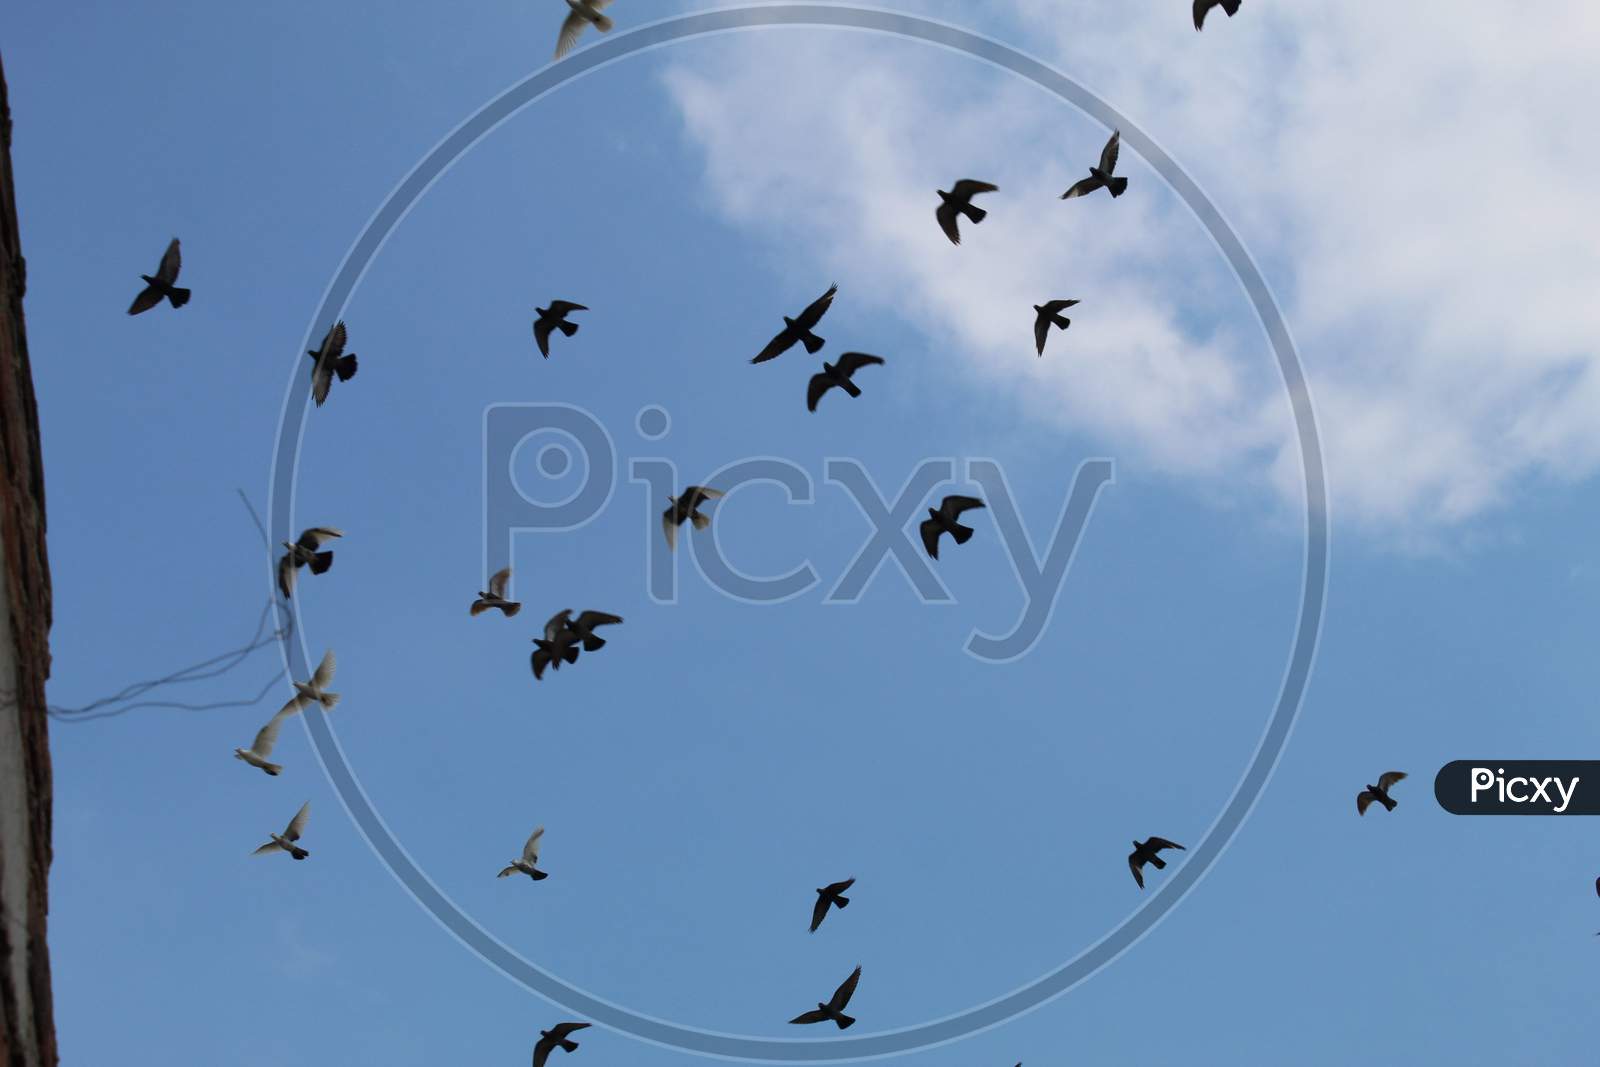 Birds in the sky.